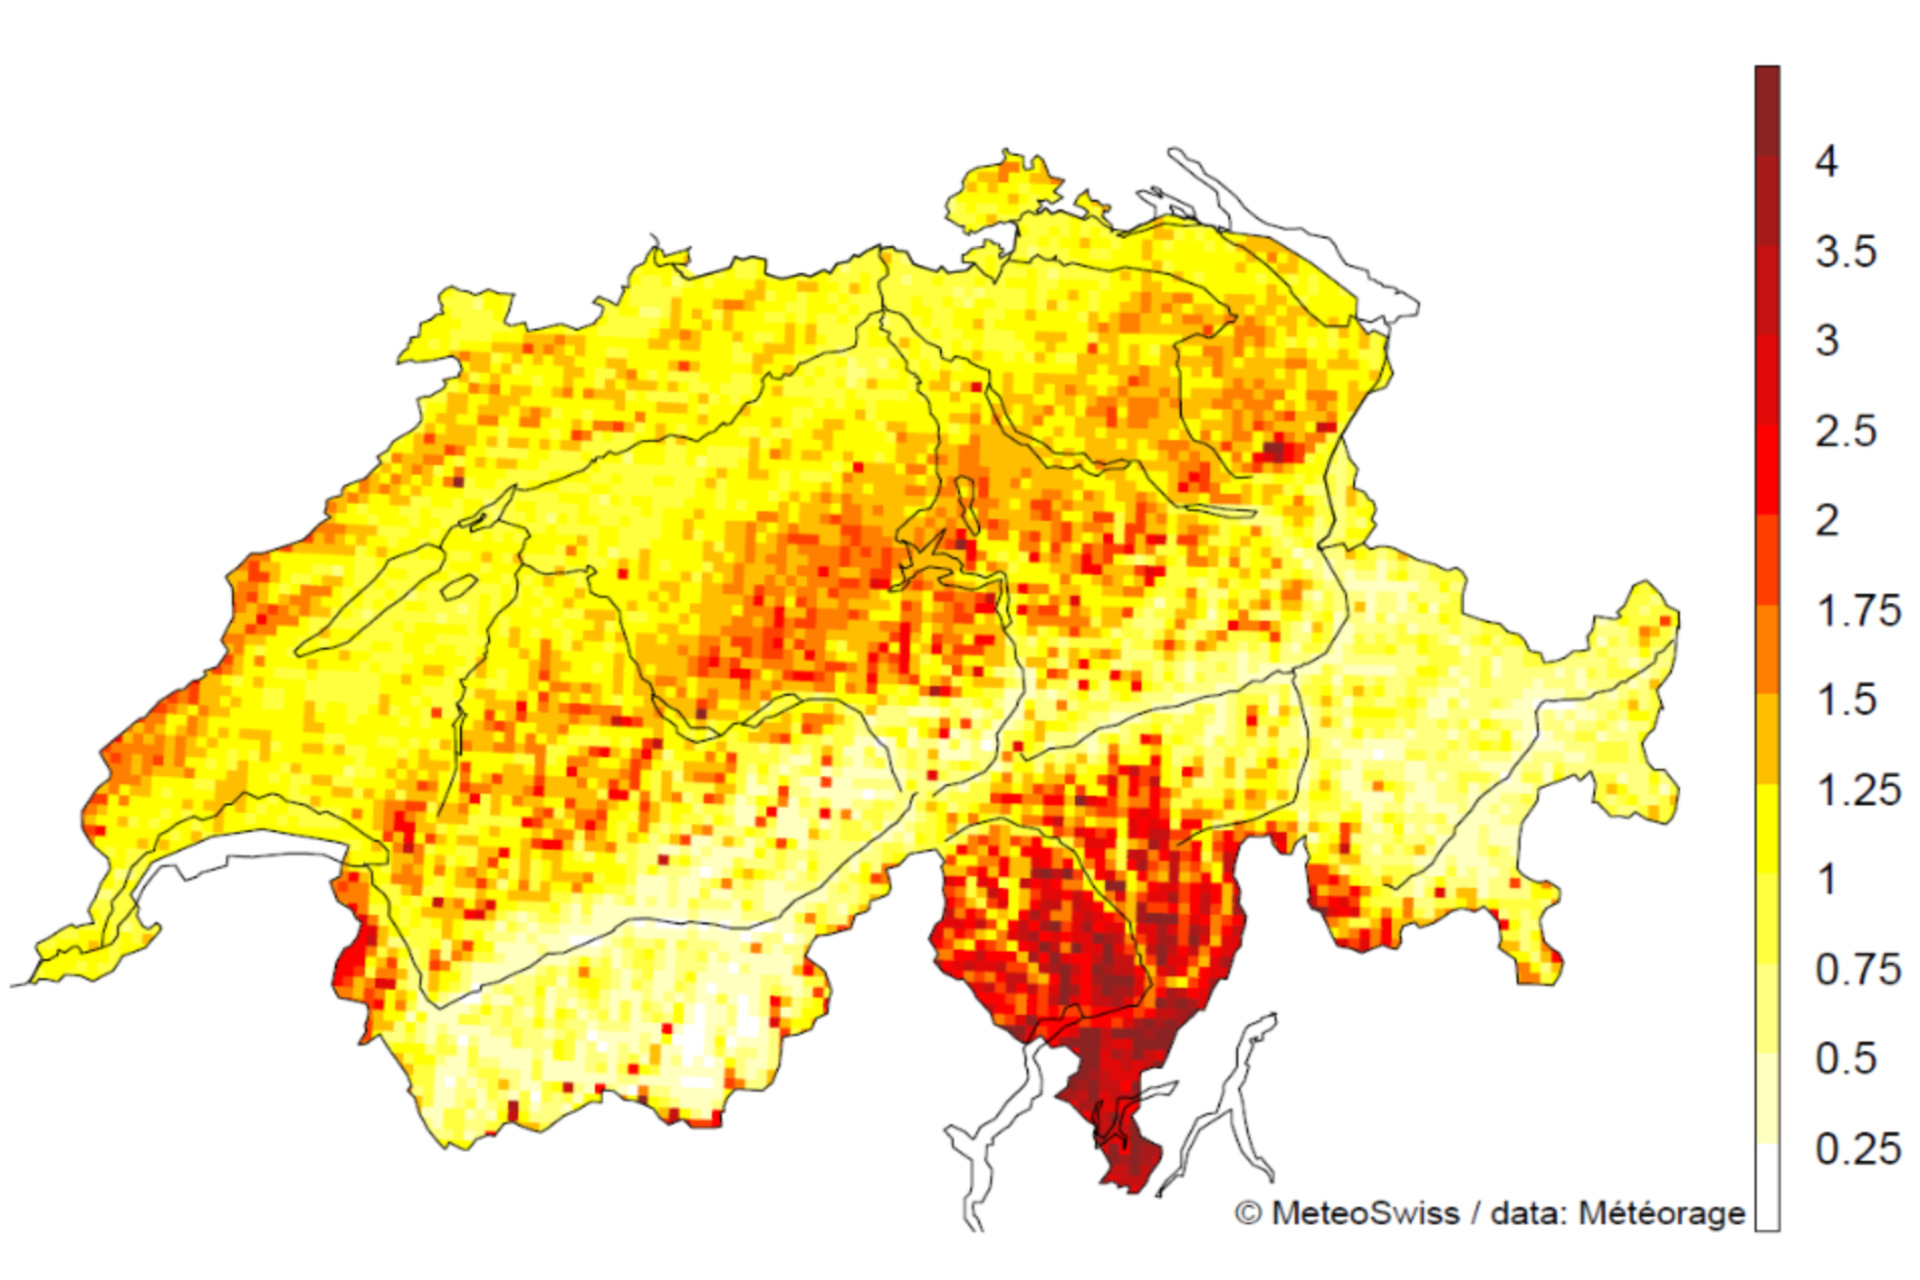 Fulmine: il numero di fulmini per chilometro quadrato in Svizzera nel periodo 2000-2020, con esclusione delle saette secondarie